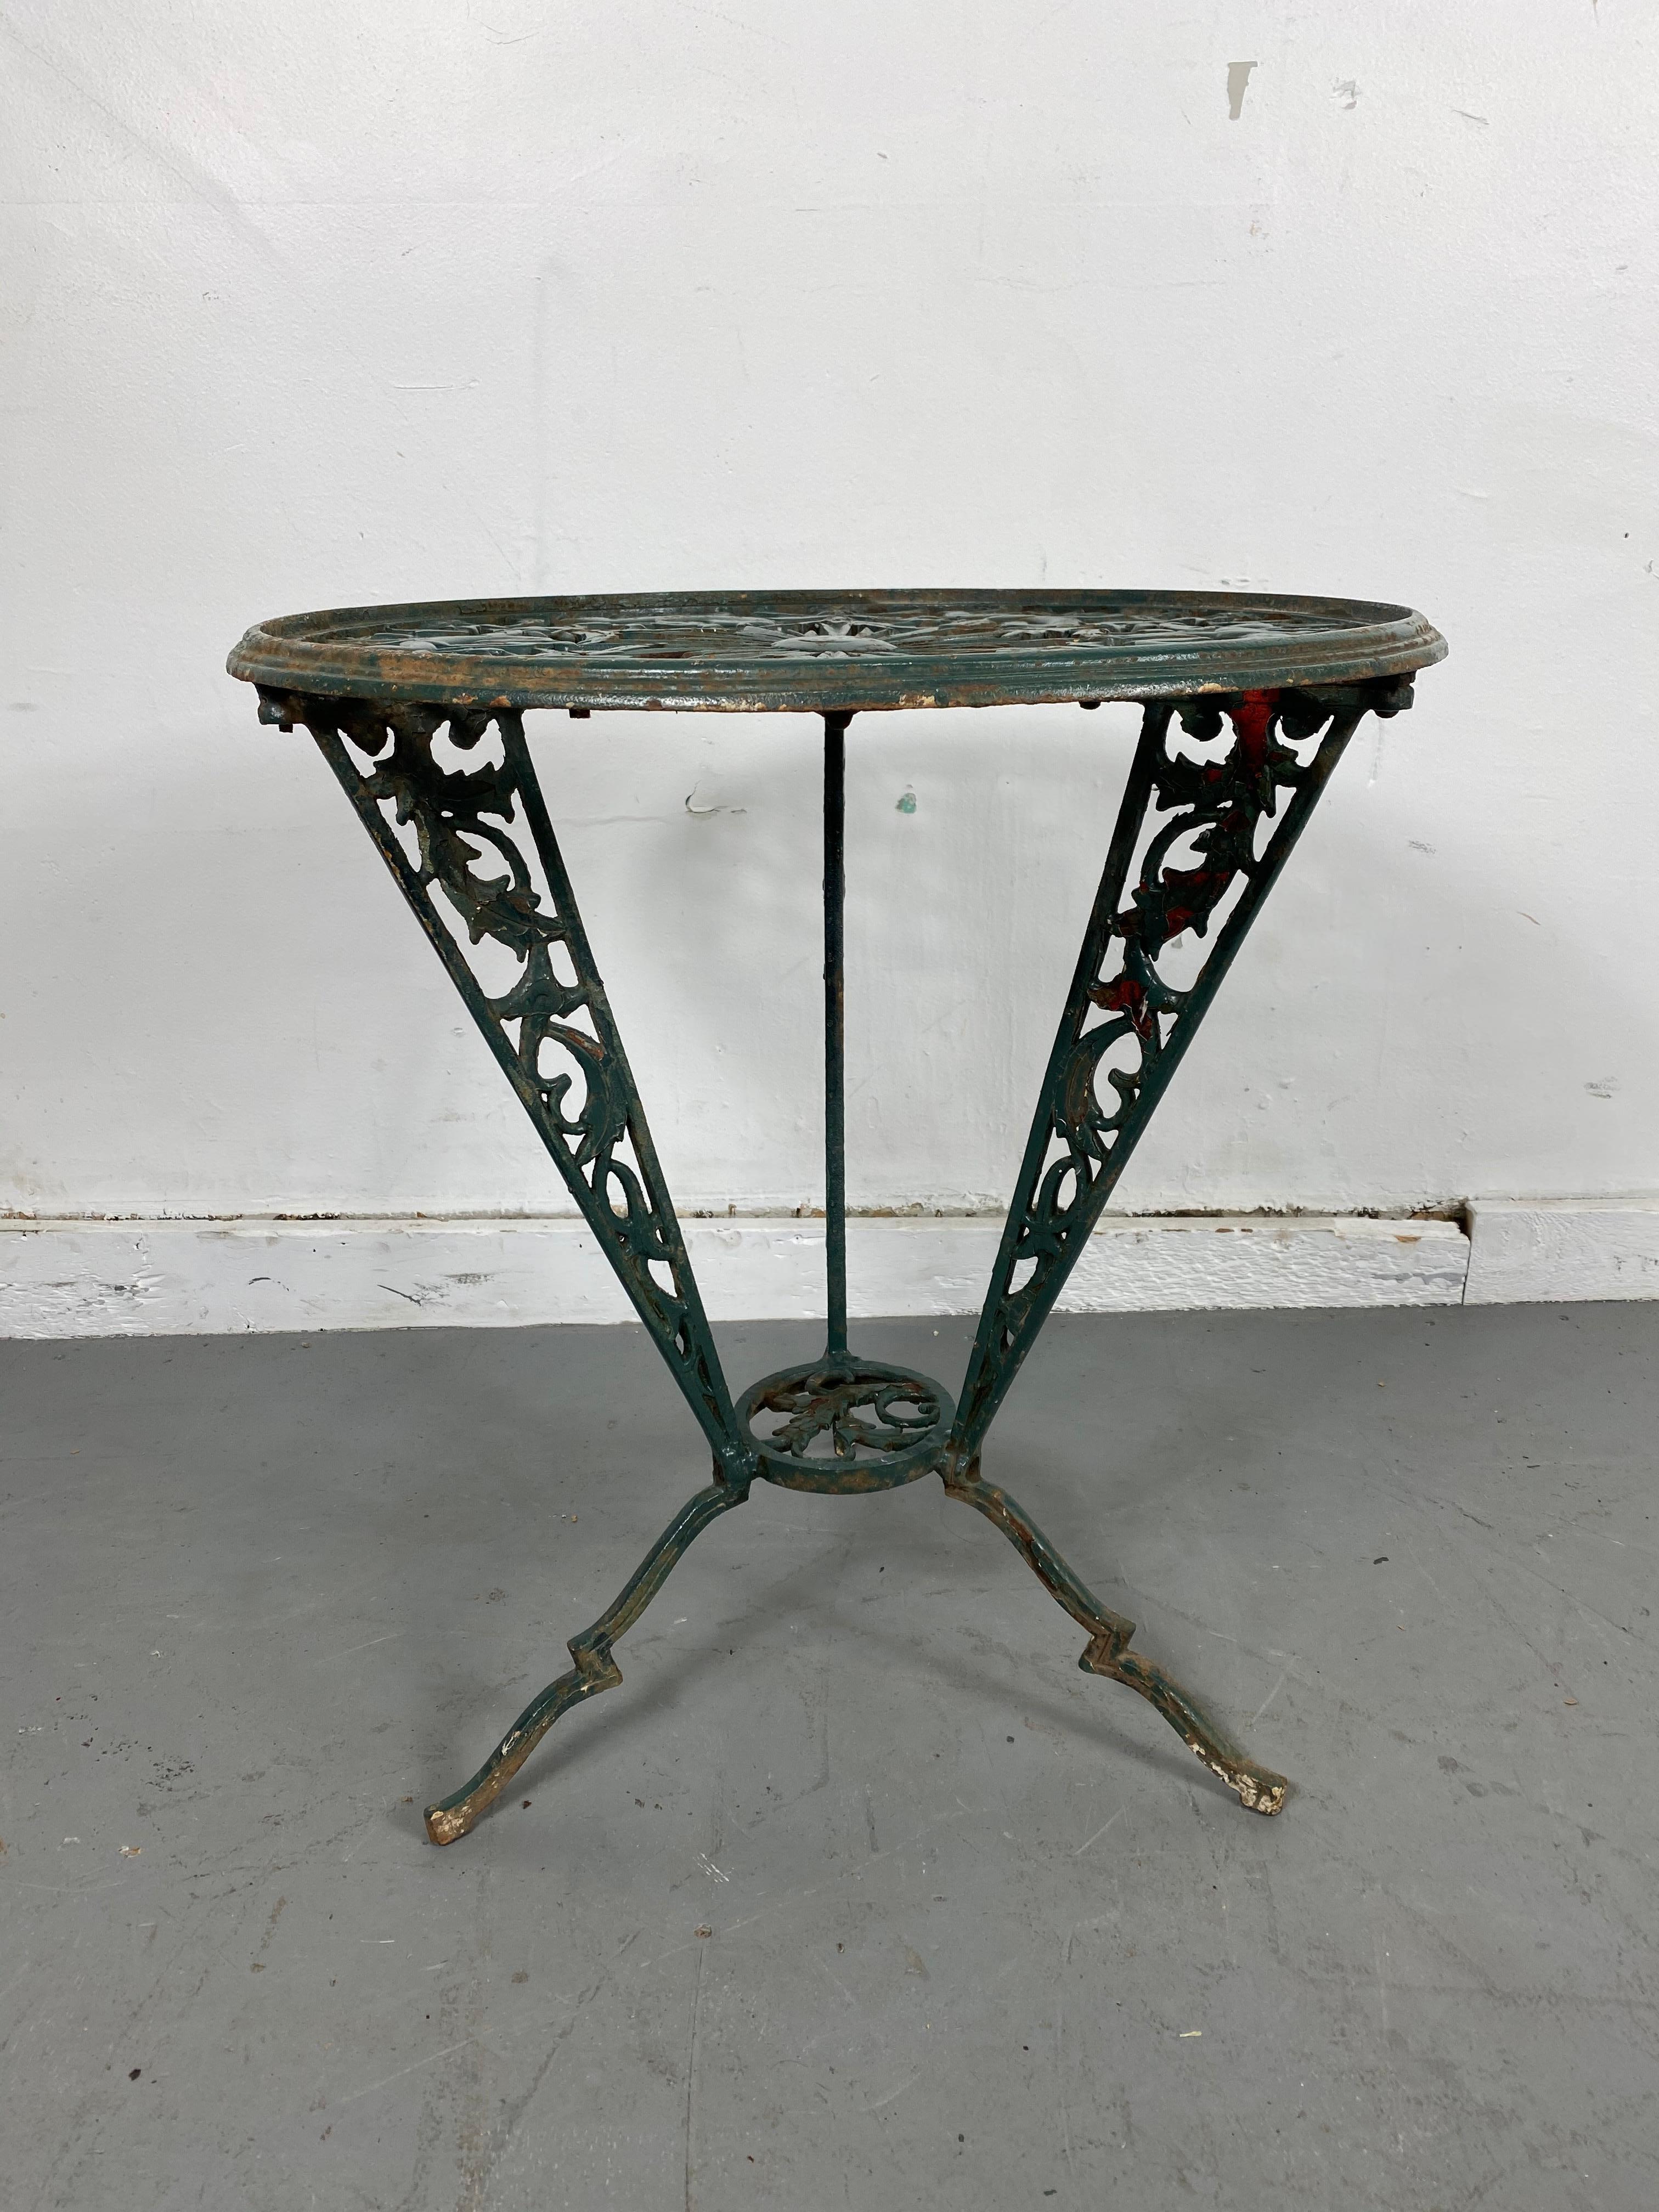 Dieser schöne Tisch wurde mit unglaublichen Details gegossen und ist mit dem Stempel RWR für Rena Rosenthal Werkstatt versehen. Sie beauftragte Hagenauer oft mit der Anfertigung von Stücken für sie, was gut dokumentiert ist., atemberaubendes